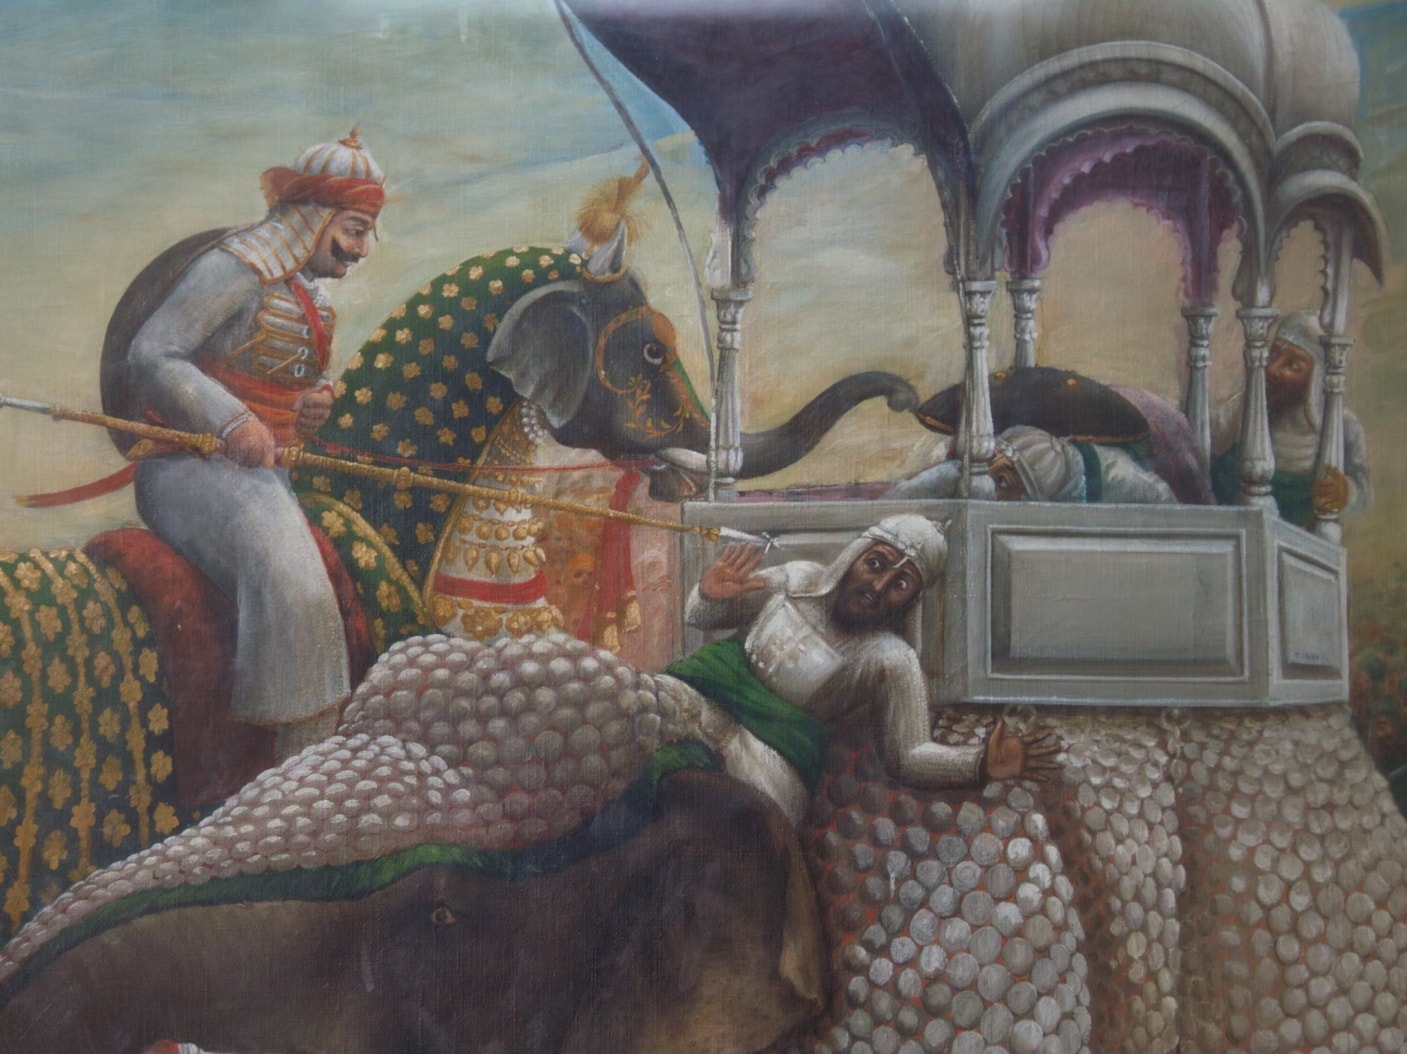 महाराणा प्रताप को मान सिंह की ओर नुकीला भाला फेंकते हुए दिखाया गया चित्र